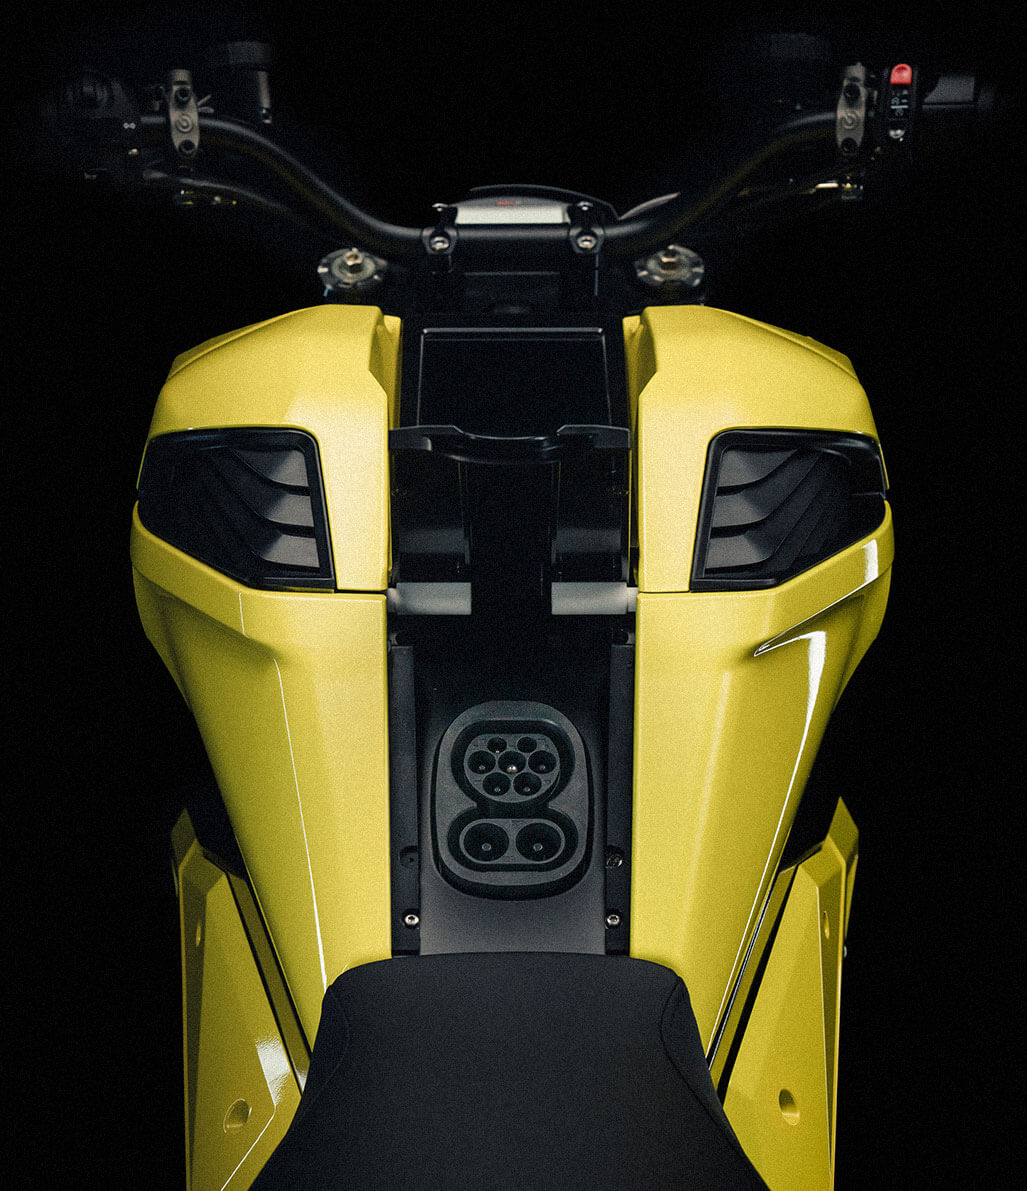 Verge TS elektrikli motosiklet üretime giriyor